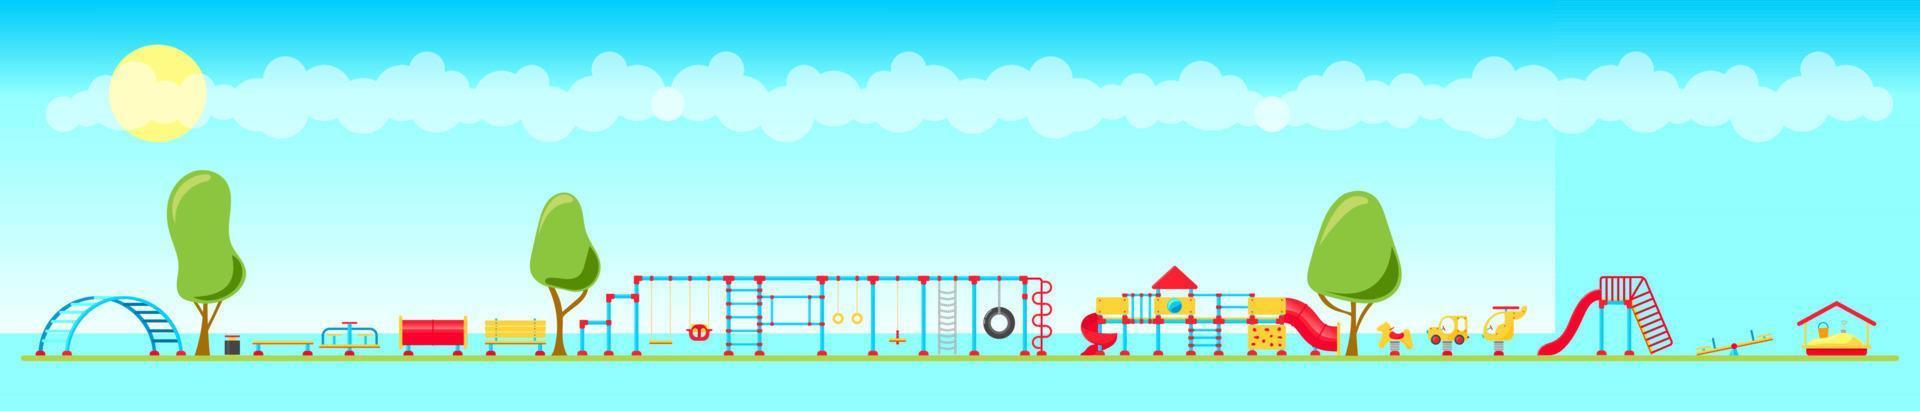 barn lekplats. uppsättning av spelar Utrustning element. stad parkera begrepp. vektor illustration